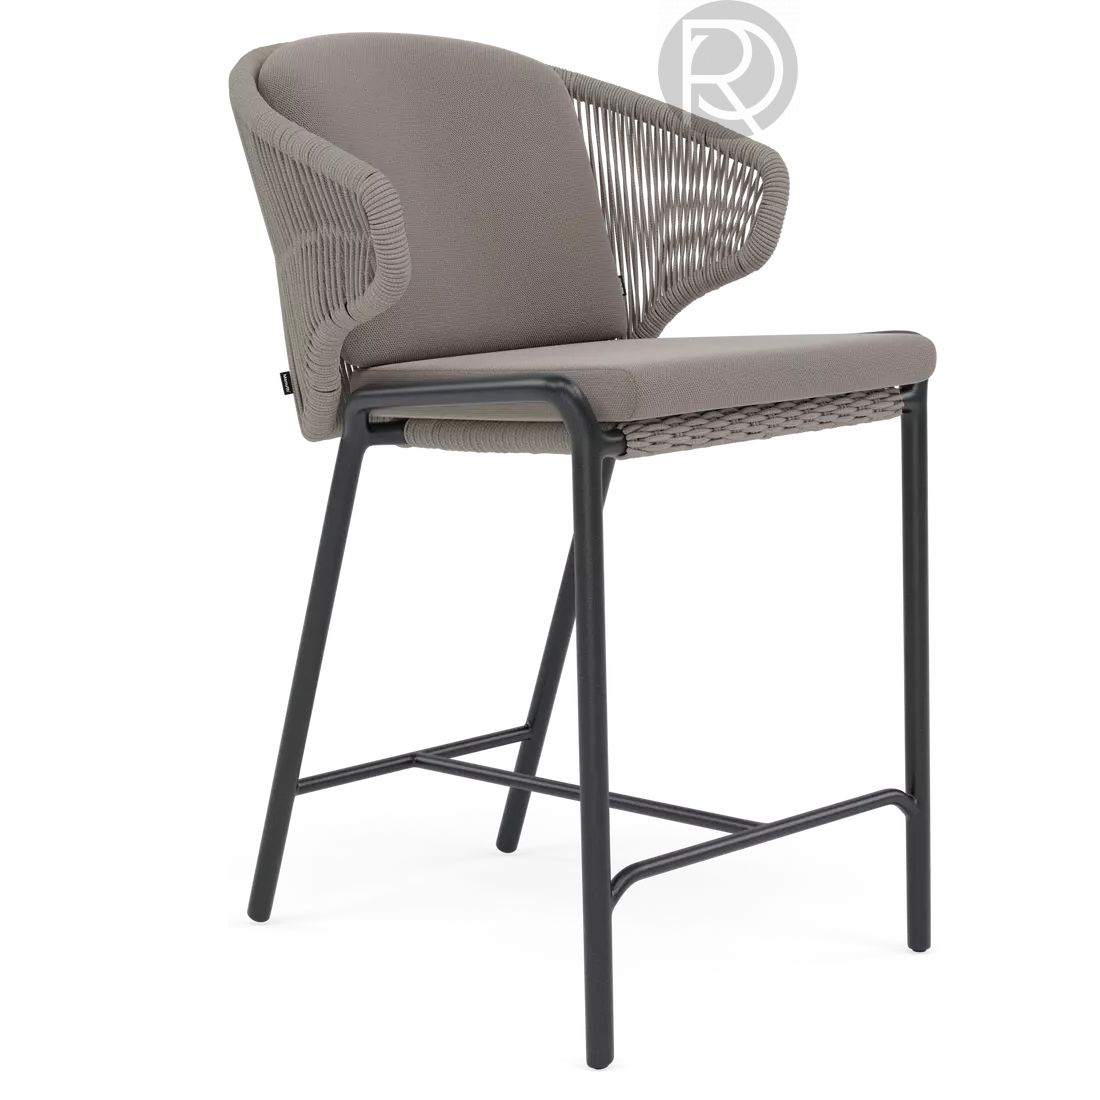 RADOC by Manutti bar stool